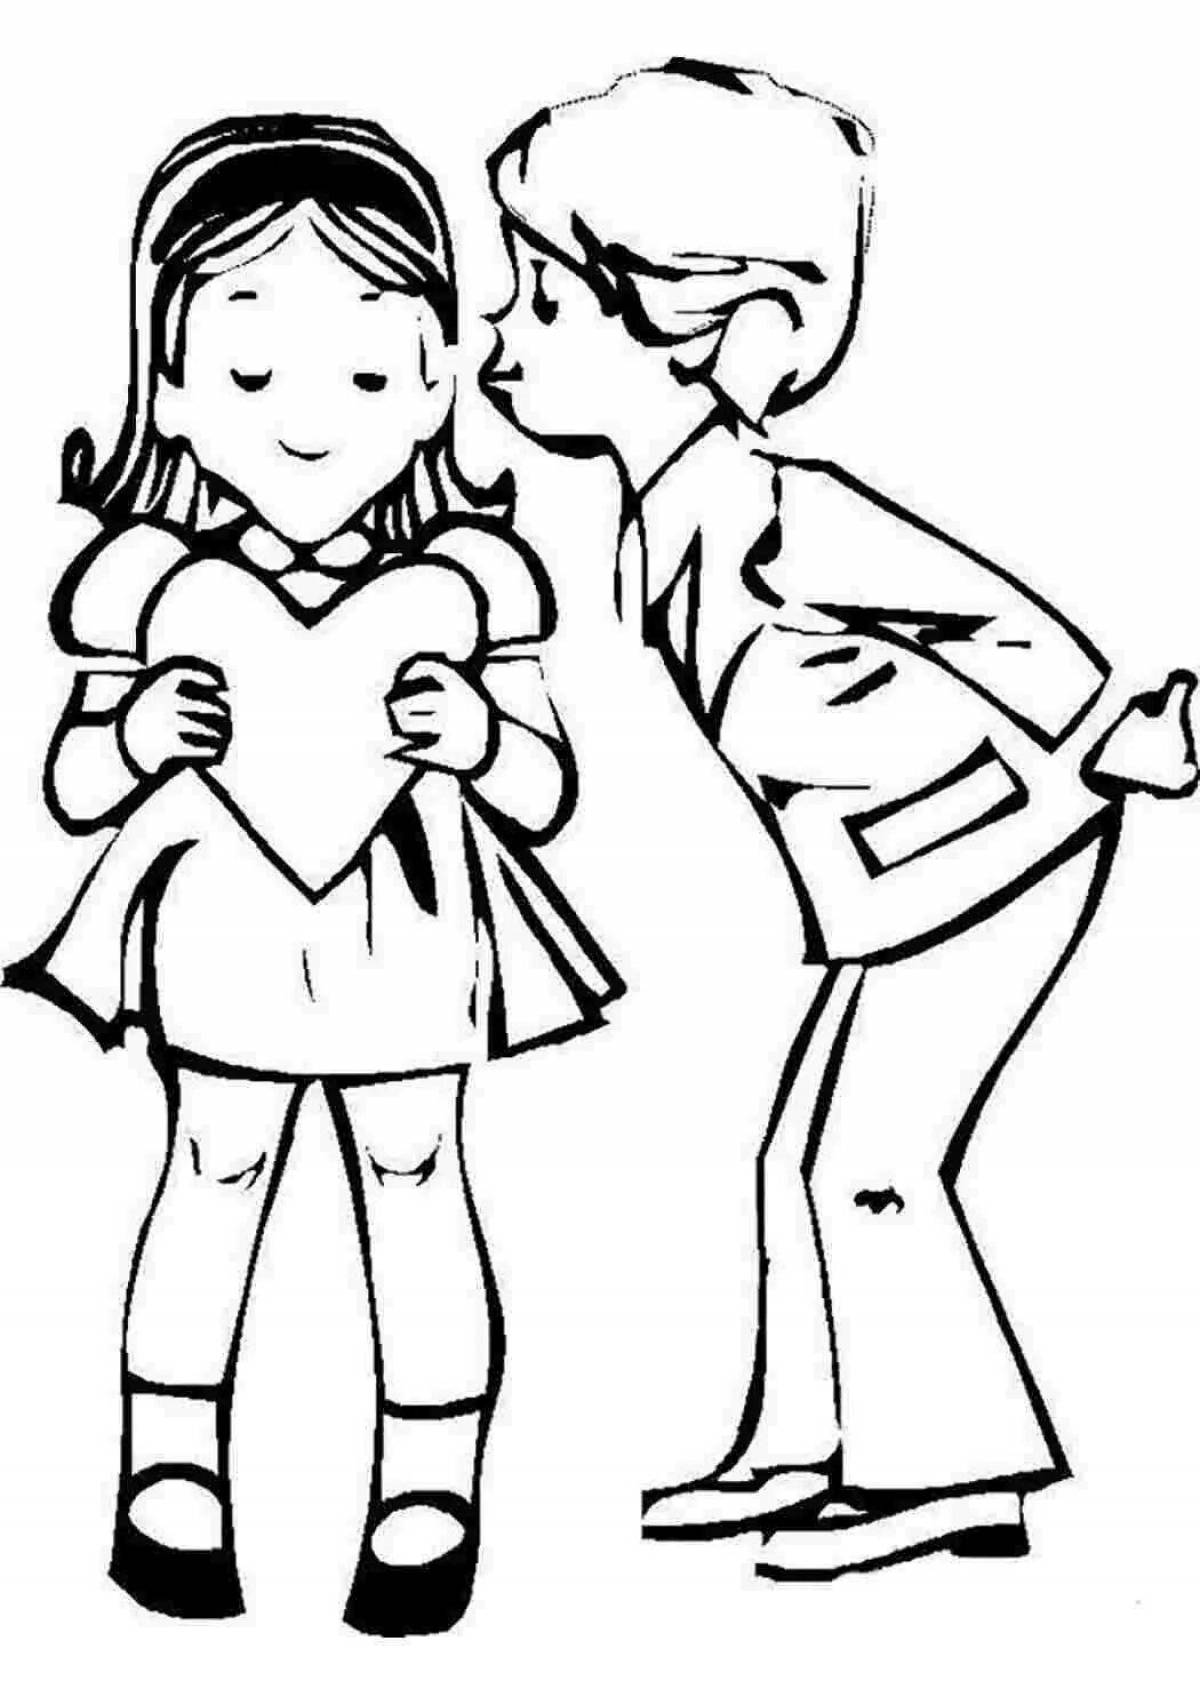 Увлекательная раскраска рисунок девочки и мальчика